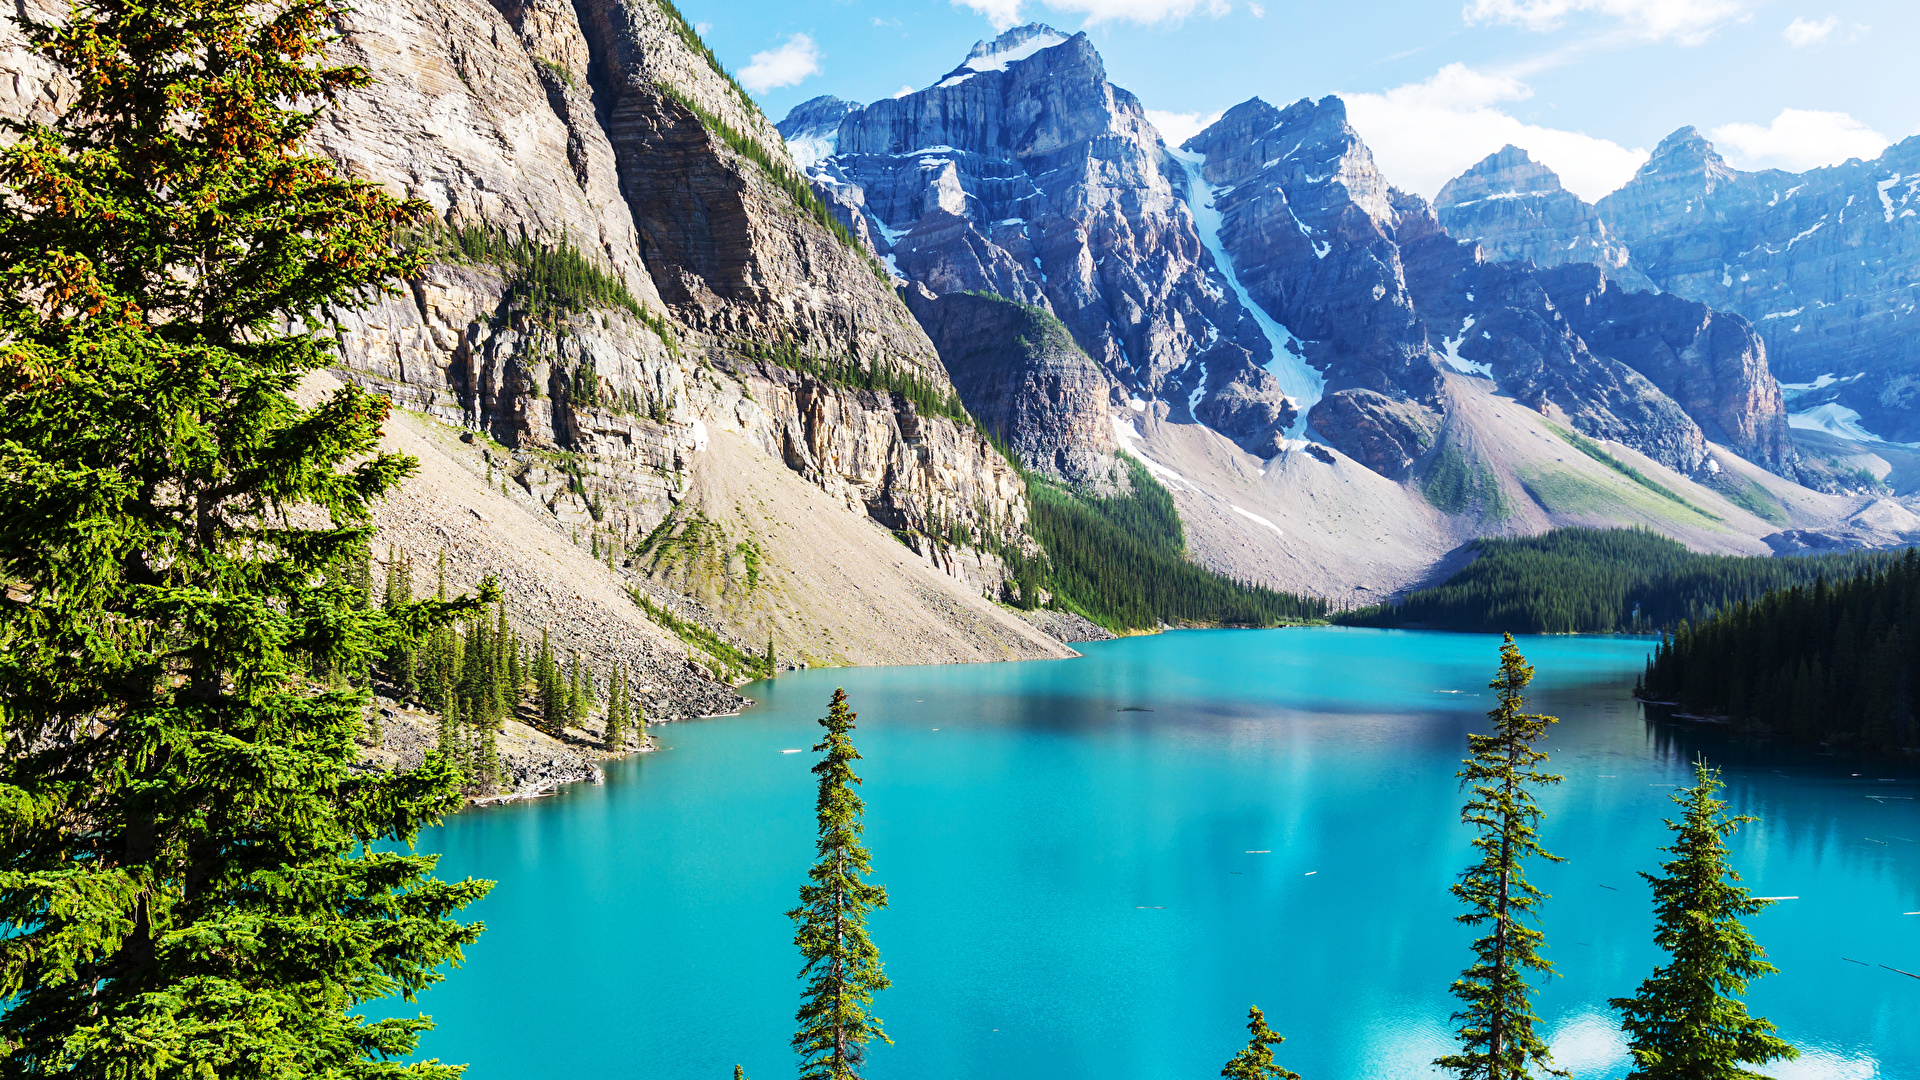 Fonds d'ecran 1920x1080 Photographie de paysage Lac Montagnes Canada